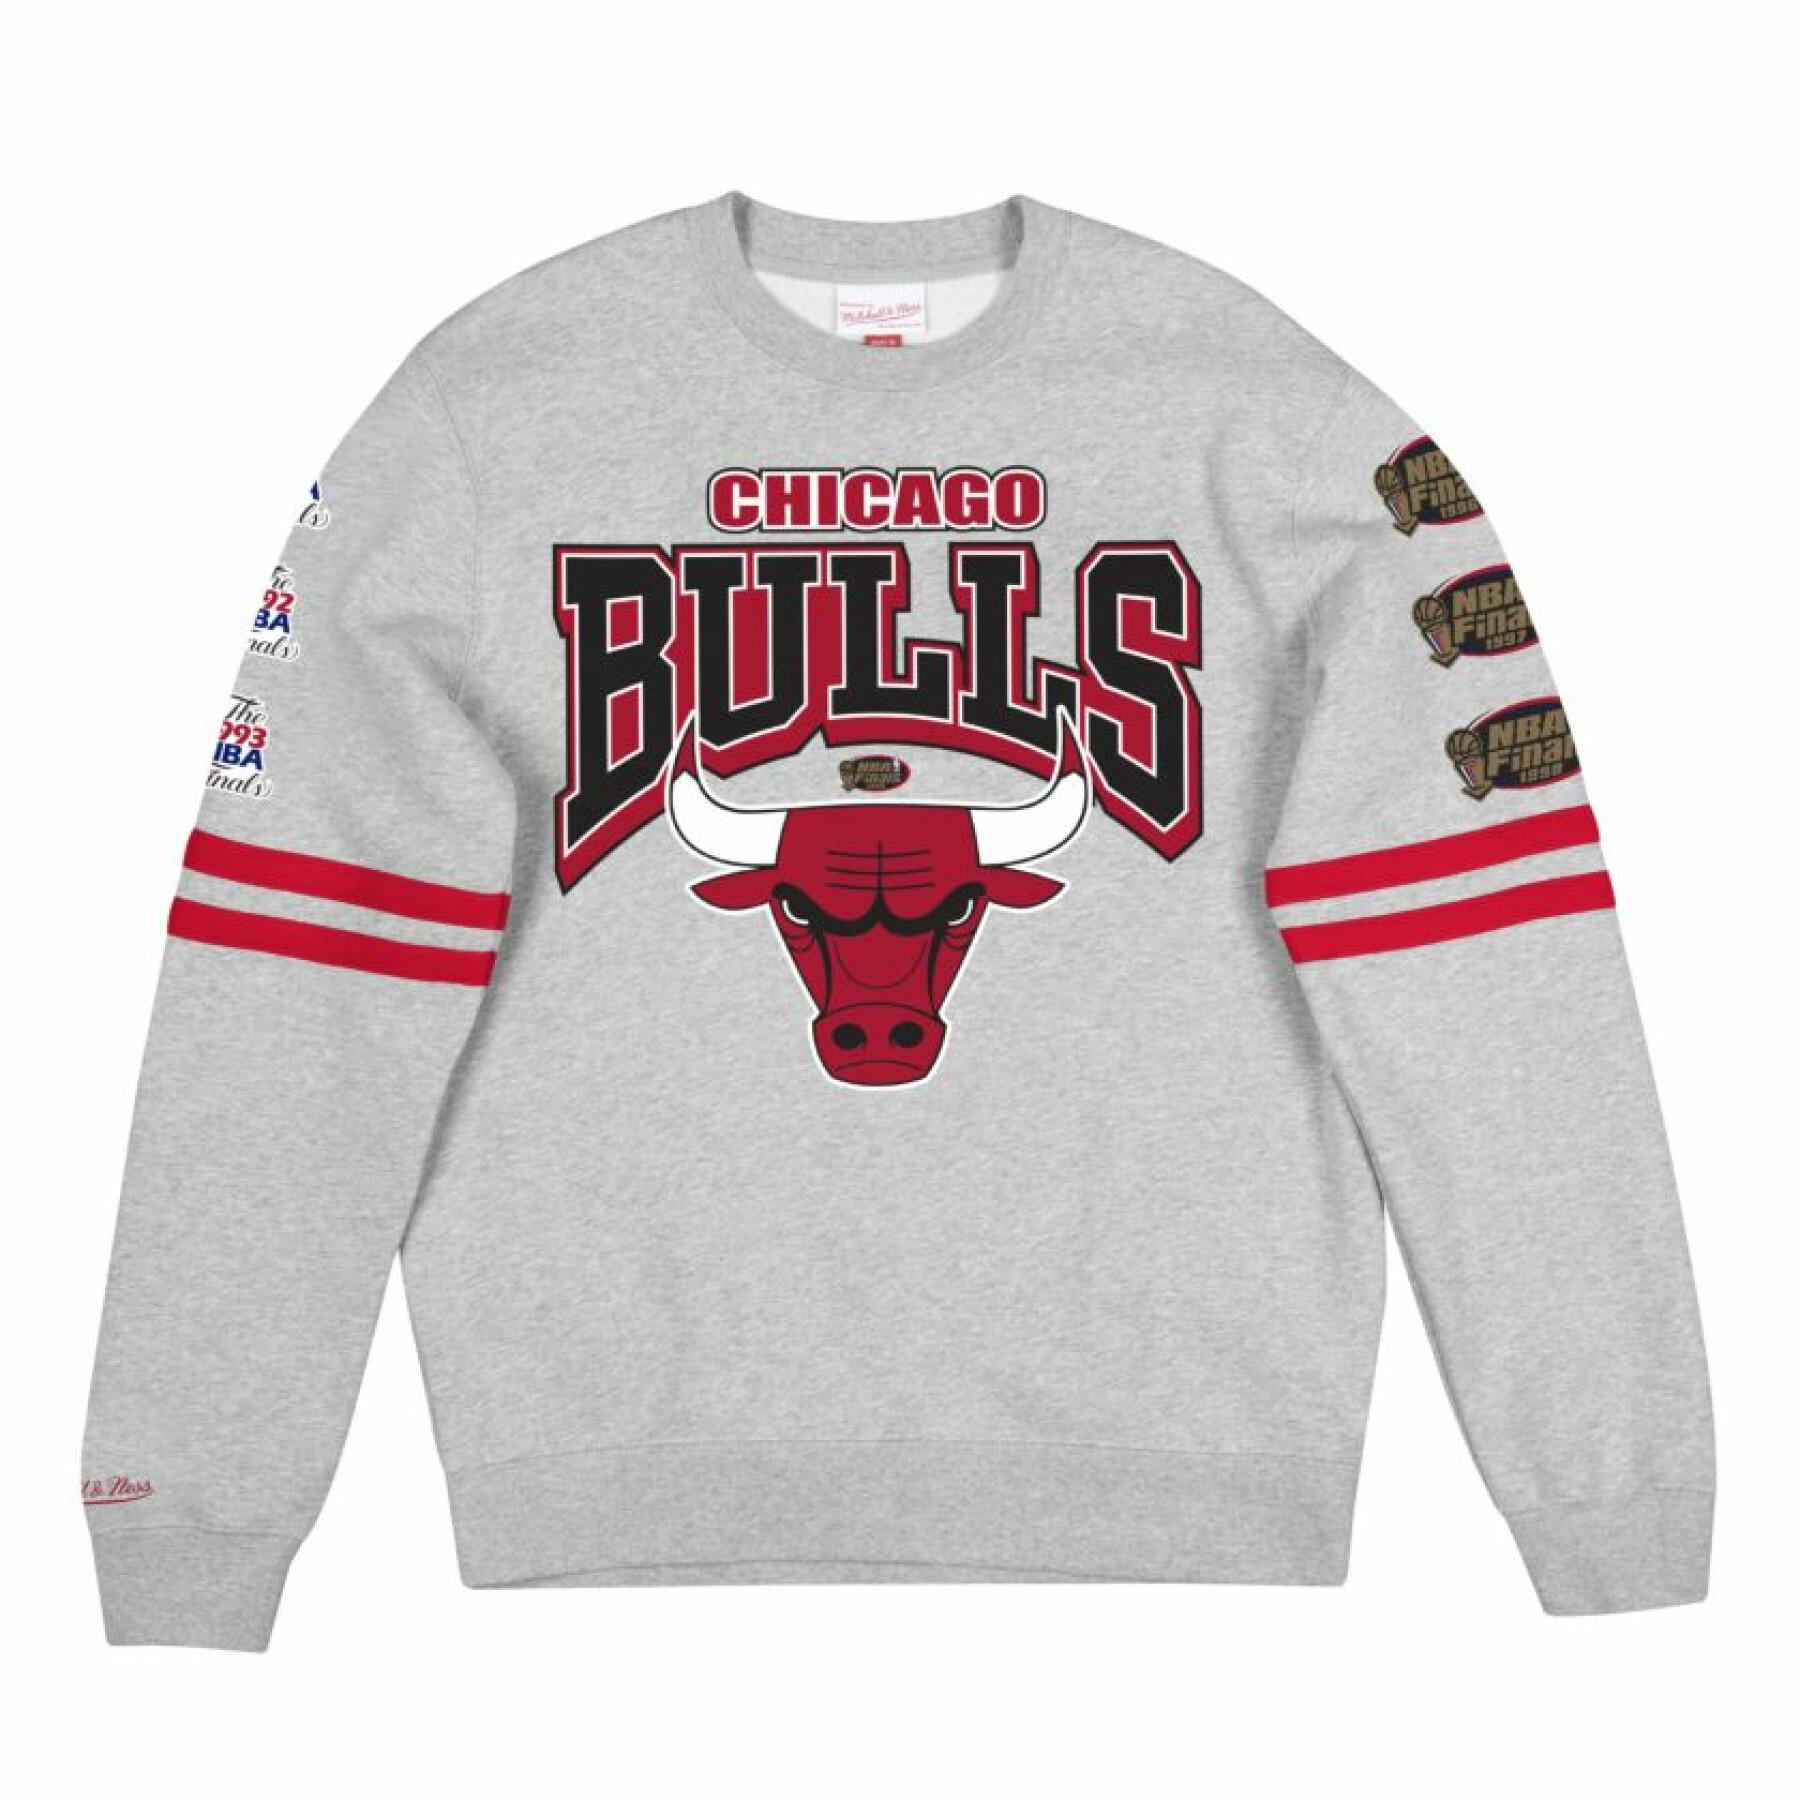 Sweetshirt Chicago Bulls Fleece Crew